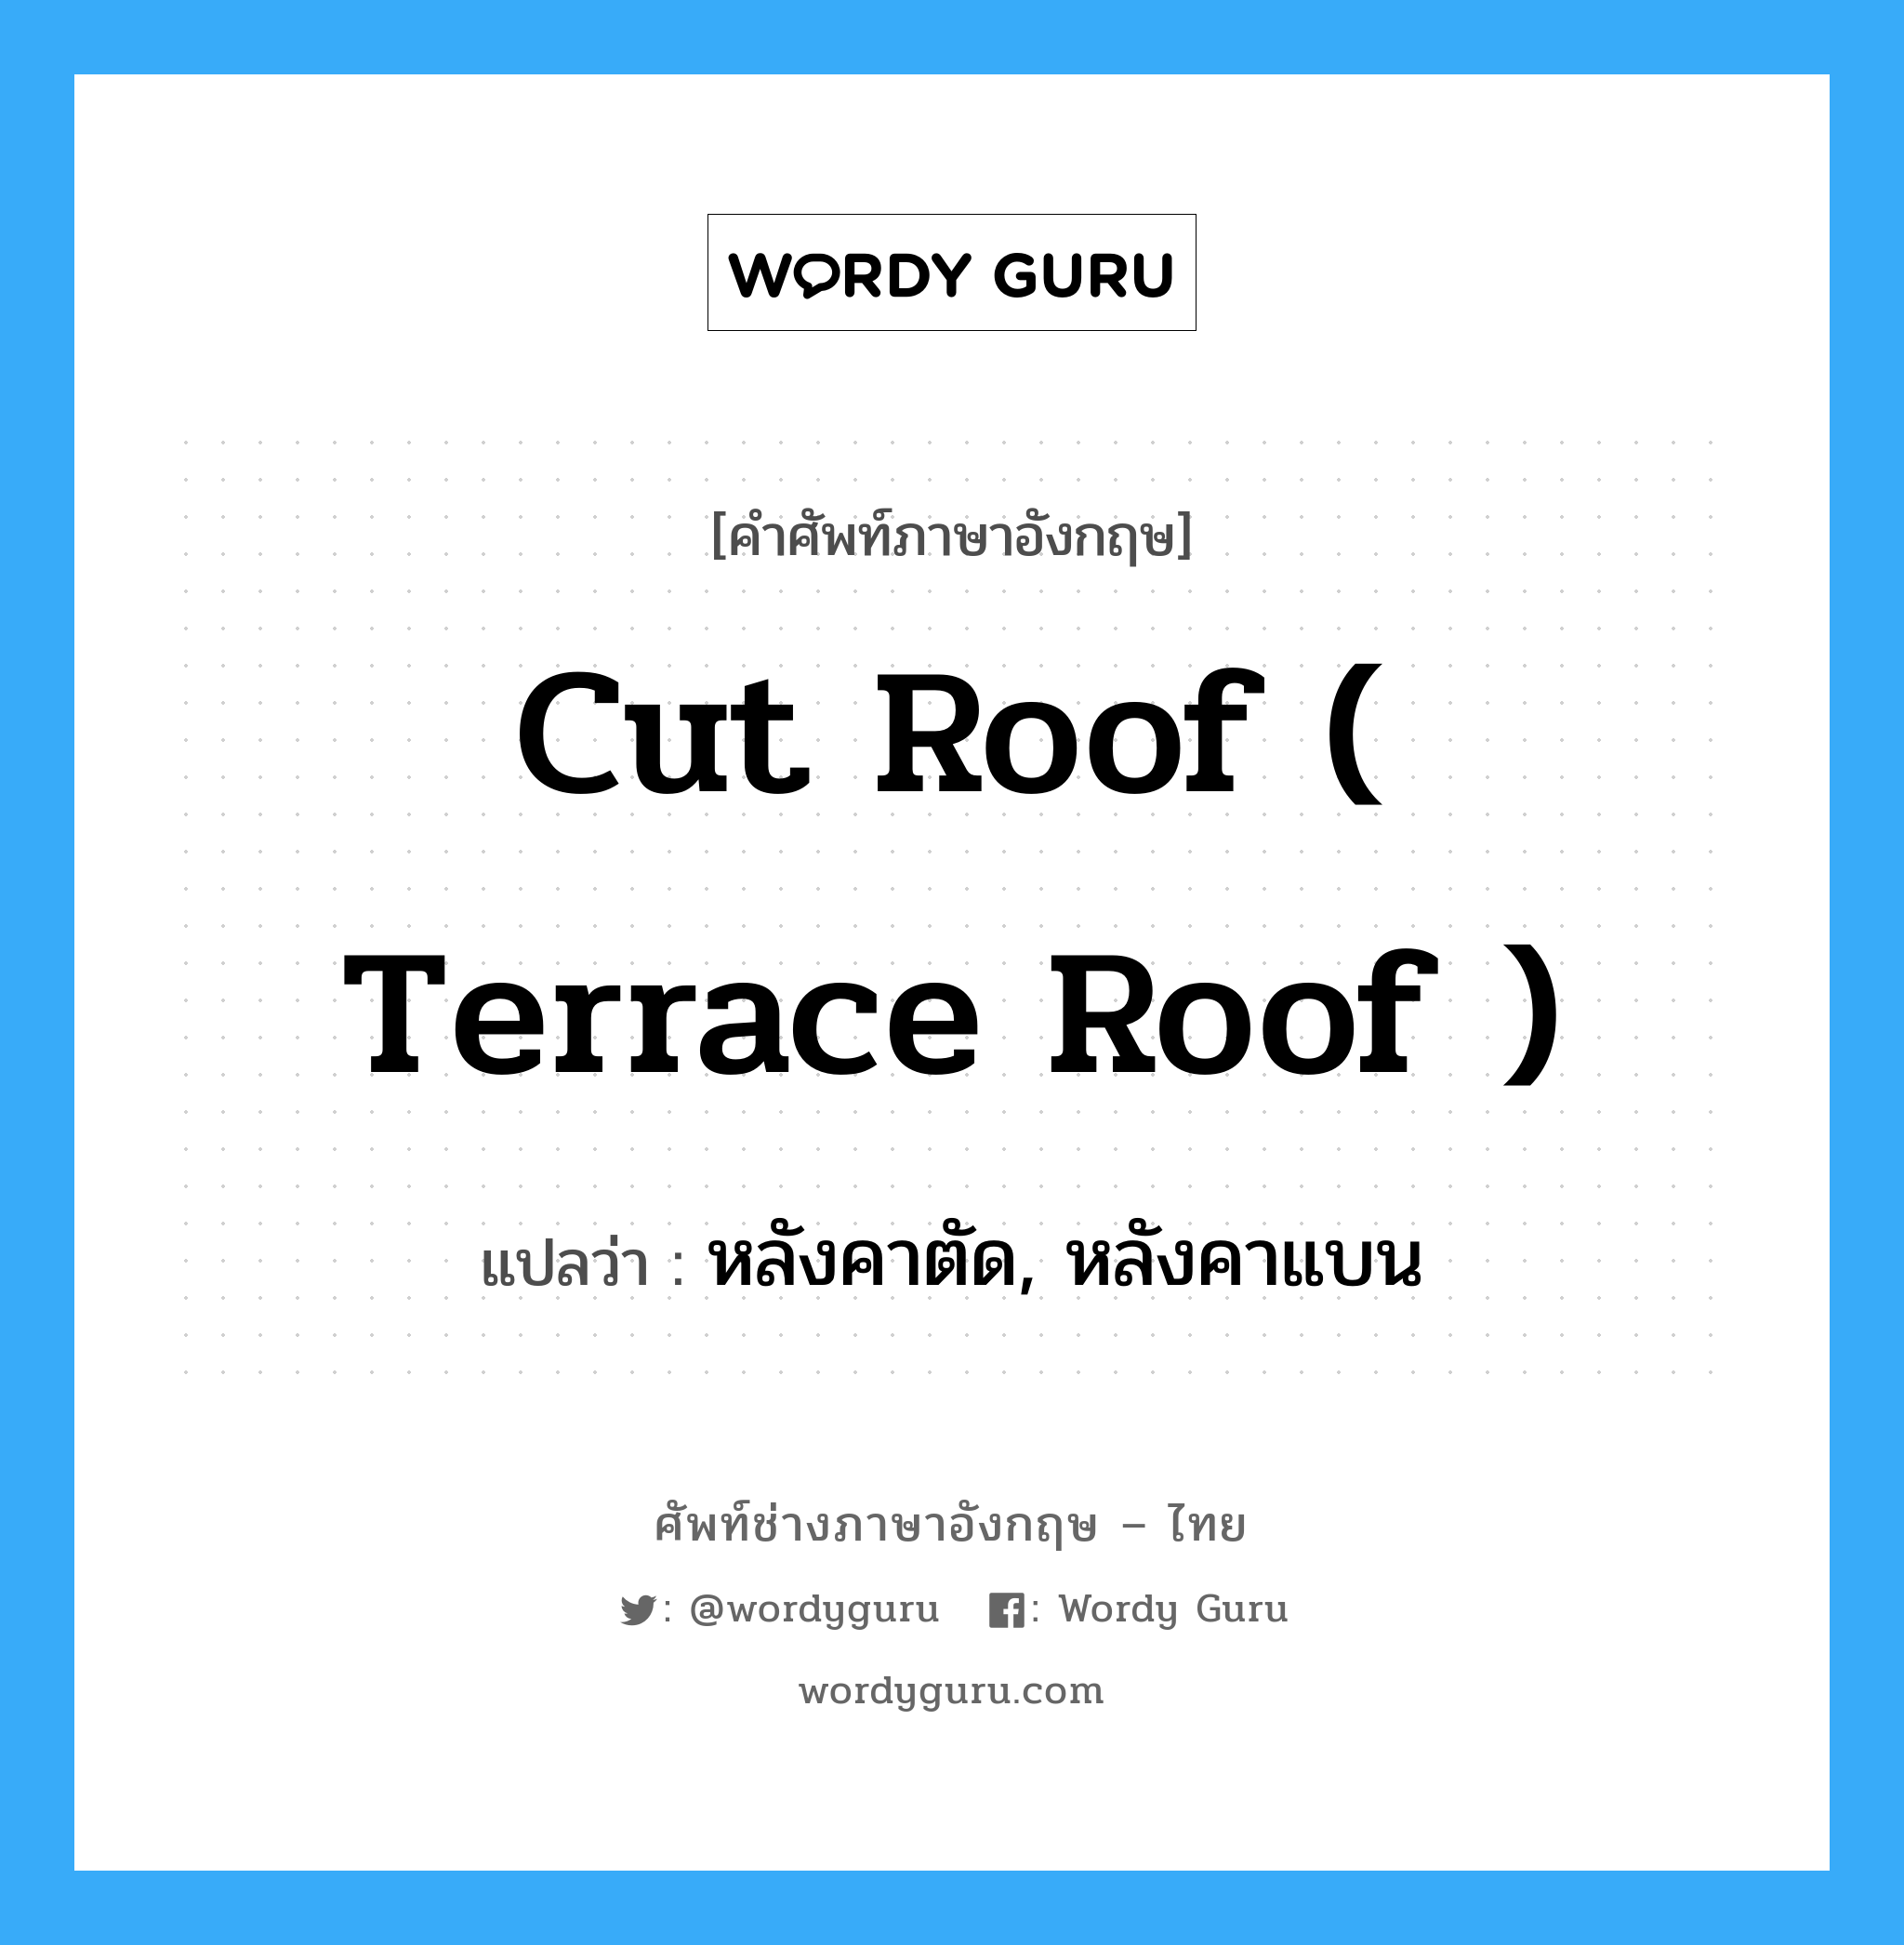 หลังคาตัด, หลังคาแบน ภาษาอังกฤษ?, คำศัพท์ช่างภาษาอังกฤษ - ไทย หลังคาตัด, หลังคาแบน คำศัพท์ภาษาอังกฤษ หลังคาตัด, หลังคาแบน แปลว่า cut roof ( terrace roof )